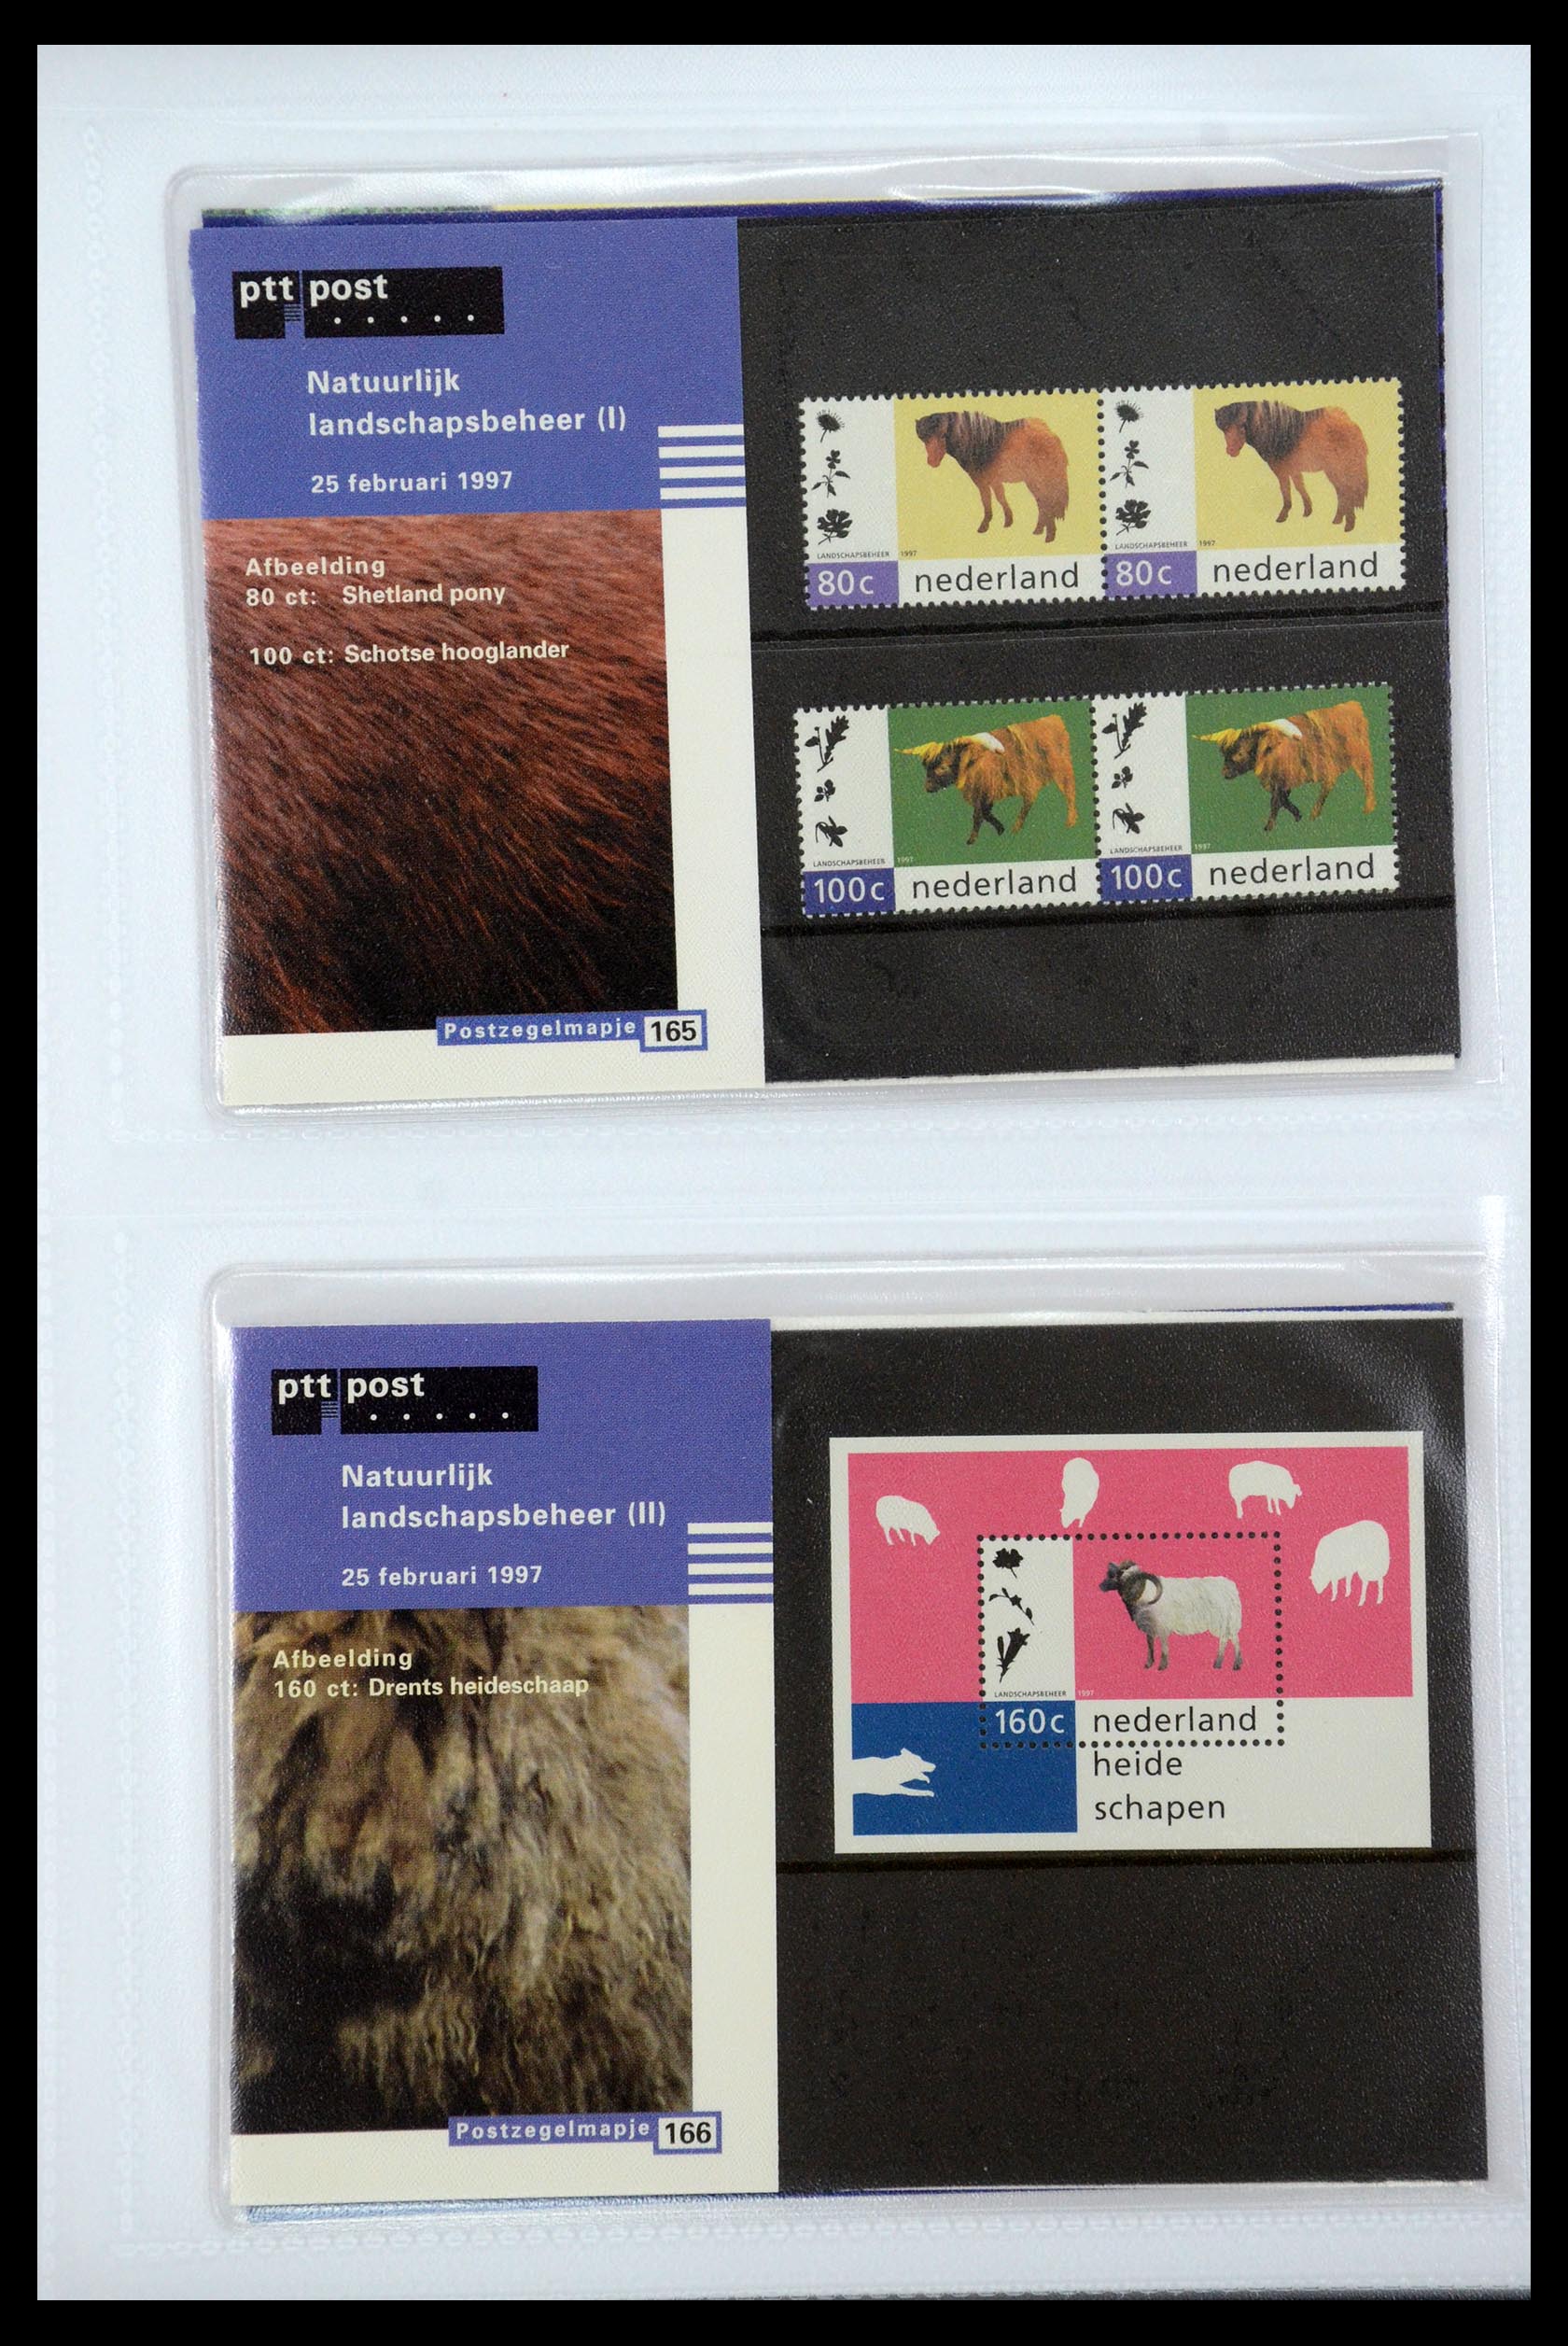 35947 086 - Stamp Collection 35947 Netherlands PTT presentation packs 1982-2019!